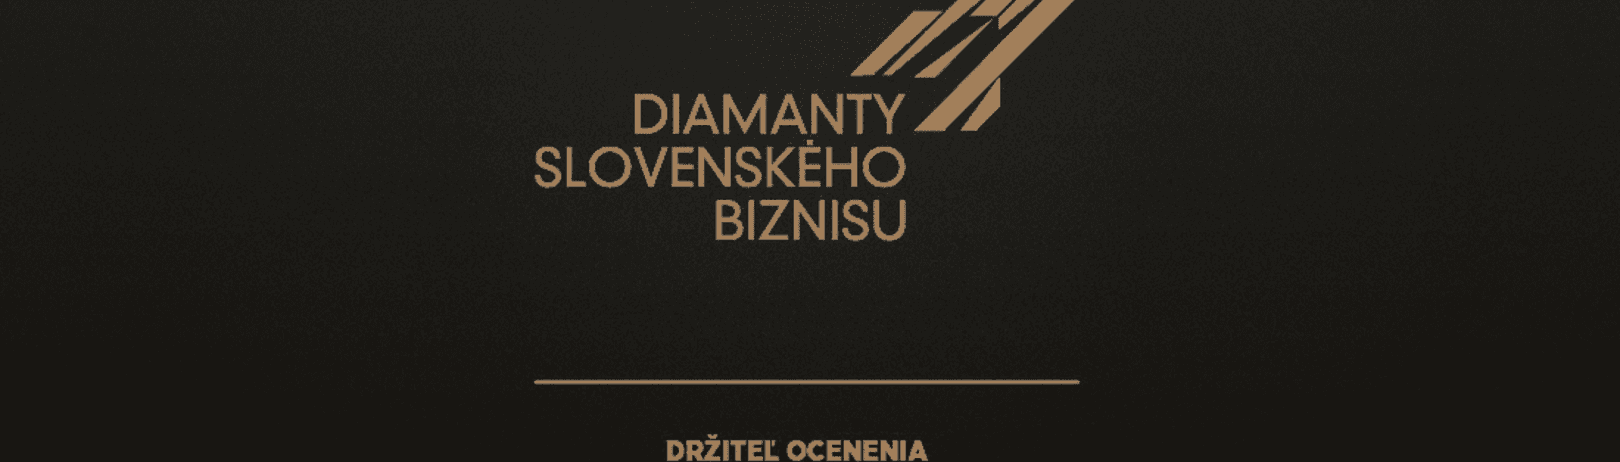 Ocenenie diamanty slovenského biznisu